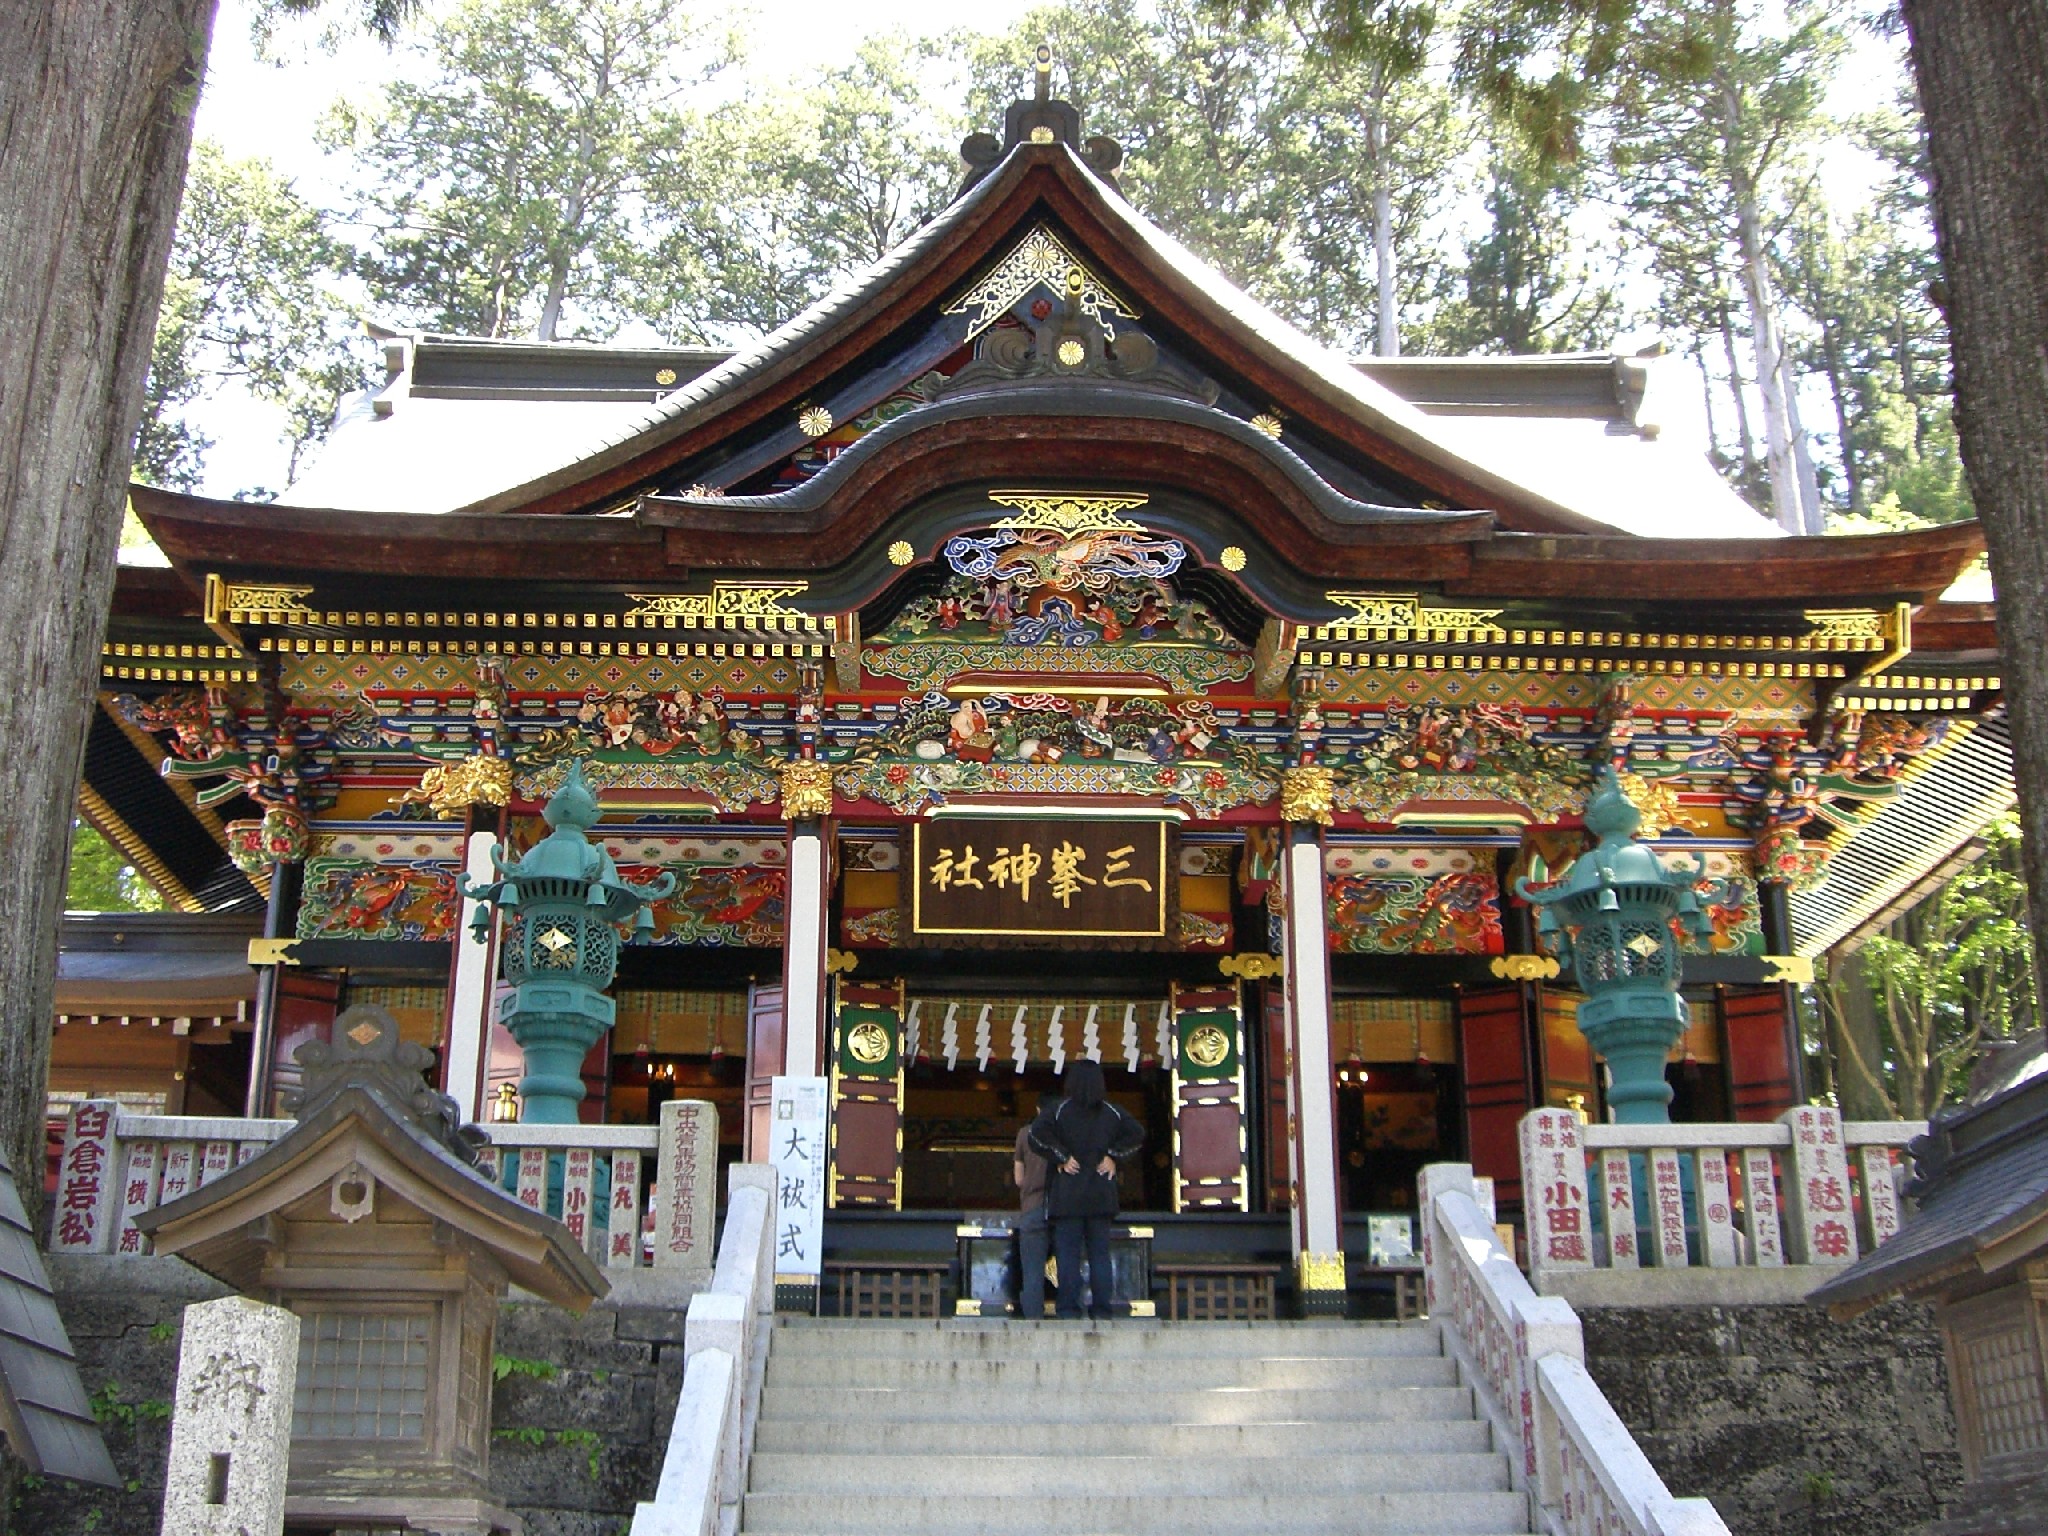 夏のフォトジェニック観光スポット18で三峯神社が１位に選ばれました 秩父観光なび スタッフブログ